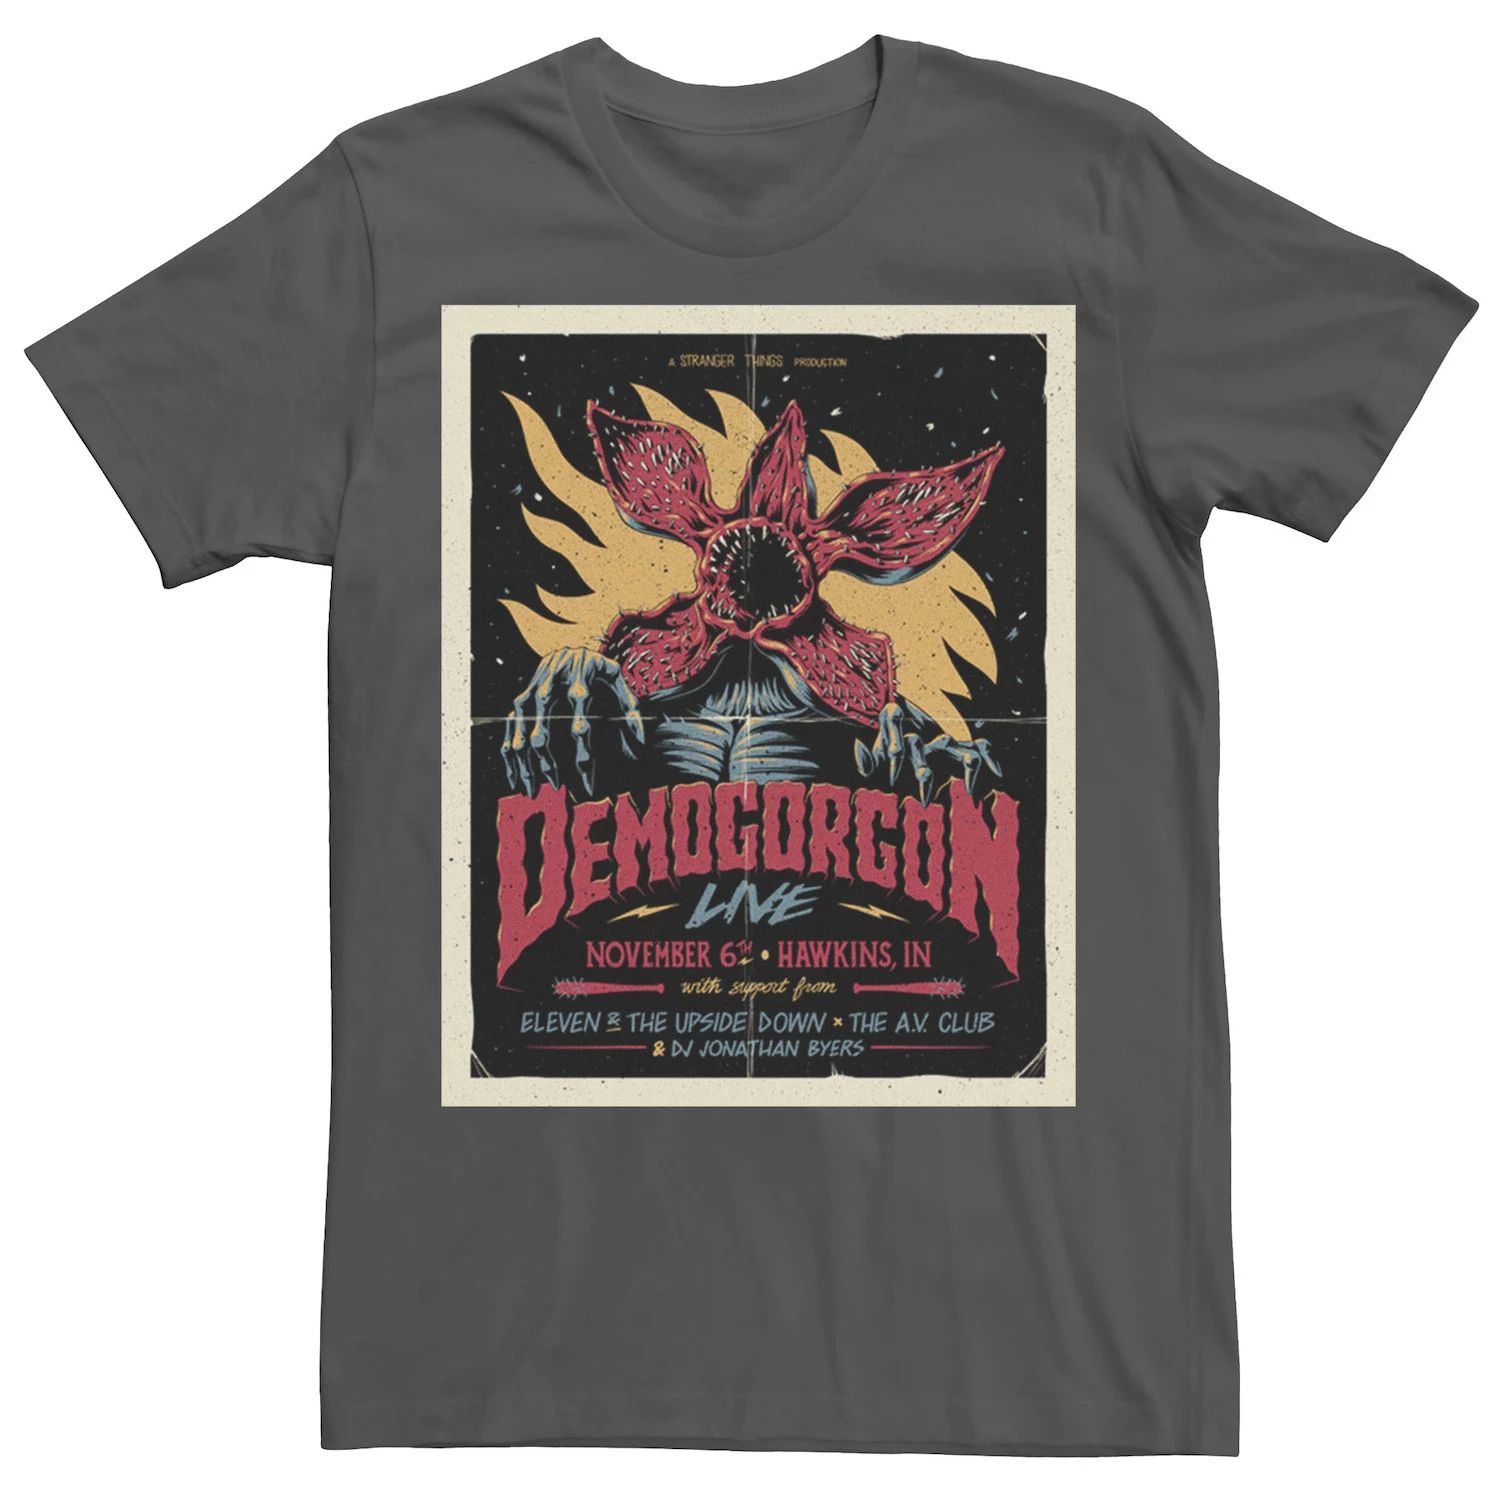 Мужская футболка с плакатом ко Дню «Очень странные дела» Demogoron Live, 6 ноября Licensed Character